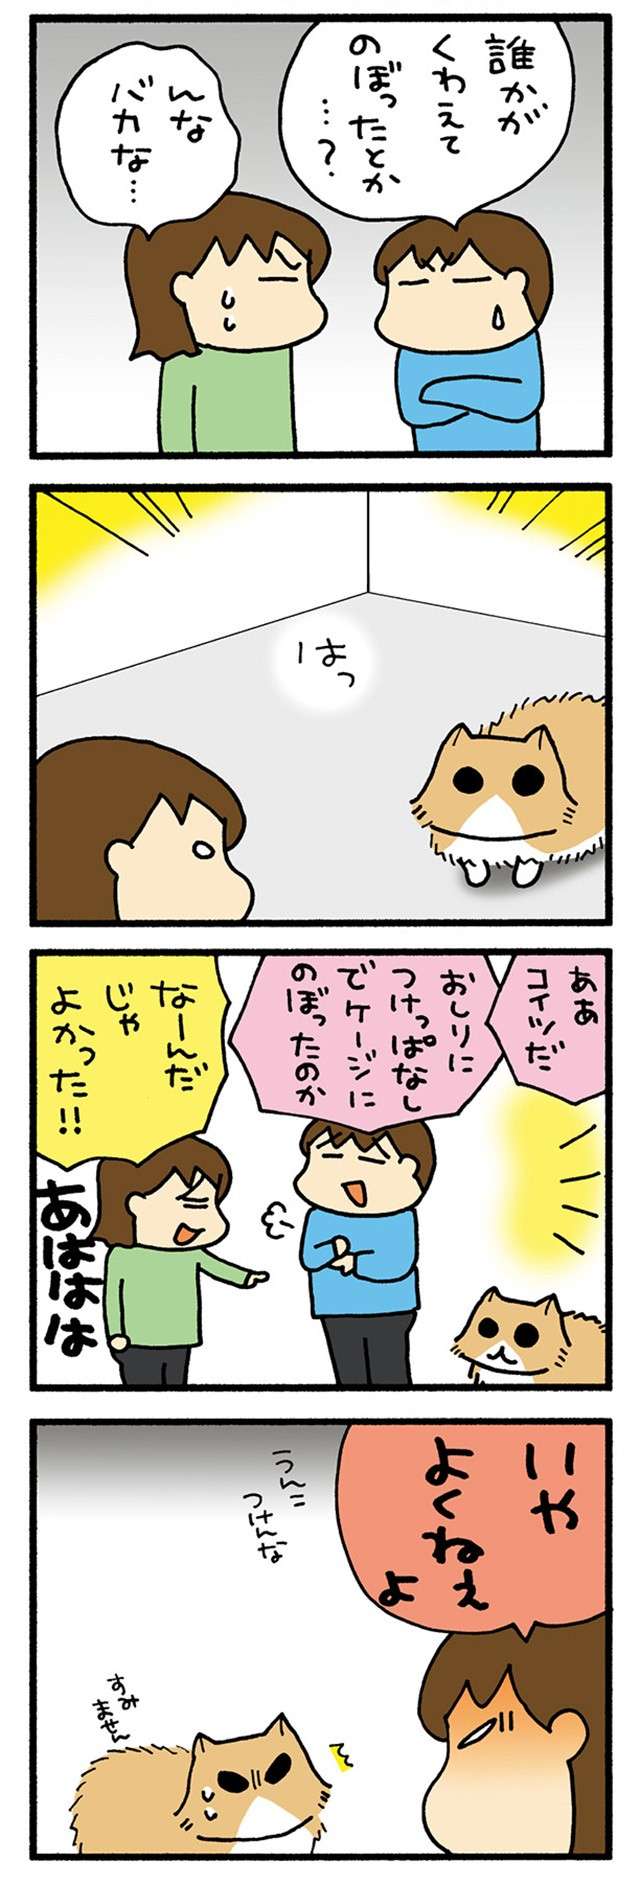 「いや、よくねえよ」猫のトイレの疑問、解消はされたものの...！／うちの3ねこ uchinosanneko04_016_2.jpg